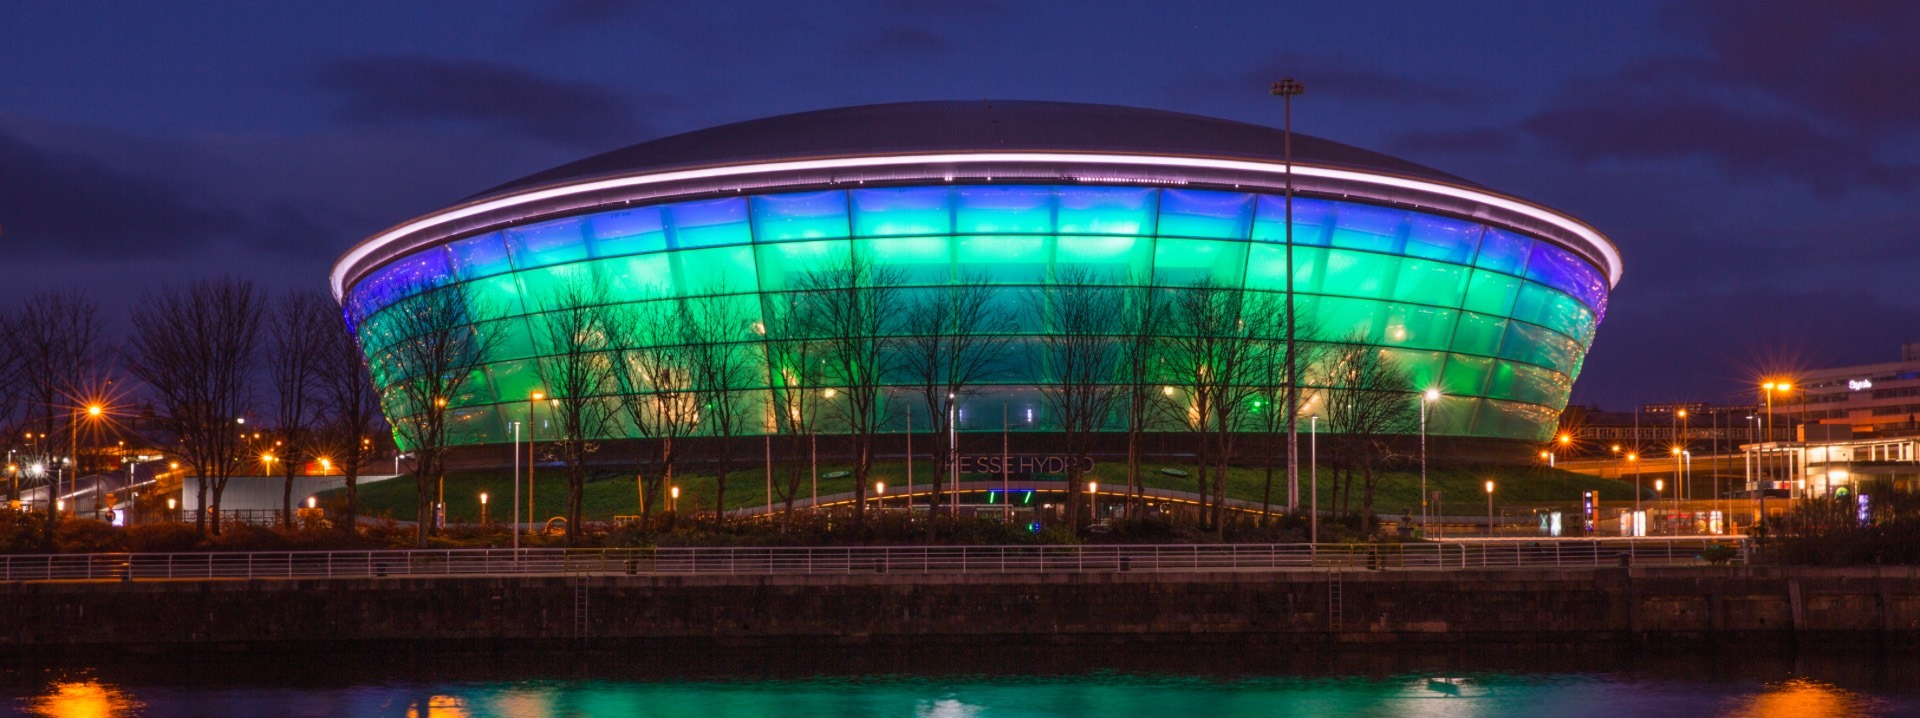 Die SSE Hydro Arena am Scottish Exhibition and Conference Centre in Glasgow ist nachts bunt erleuchtet.